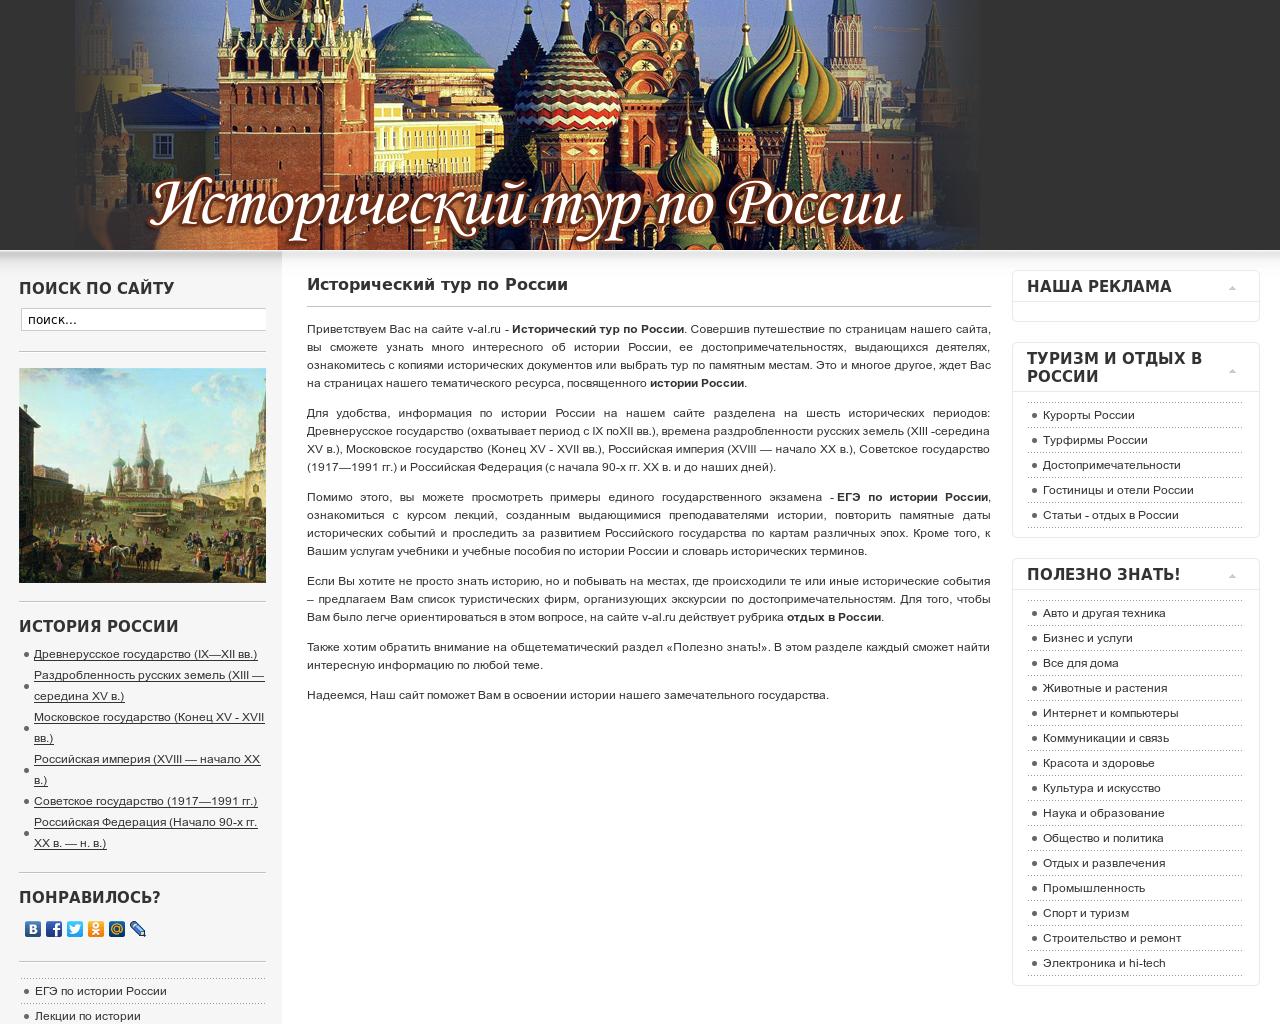 Изображение сайта v-al.ru в разрешении 1280x1024